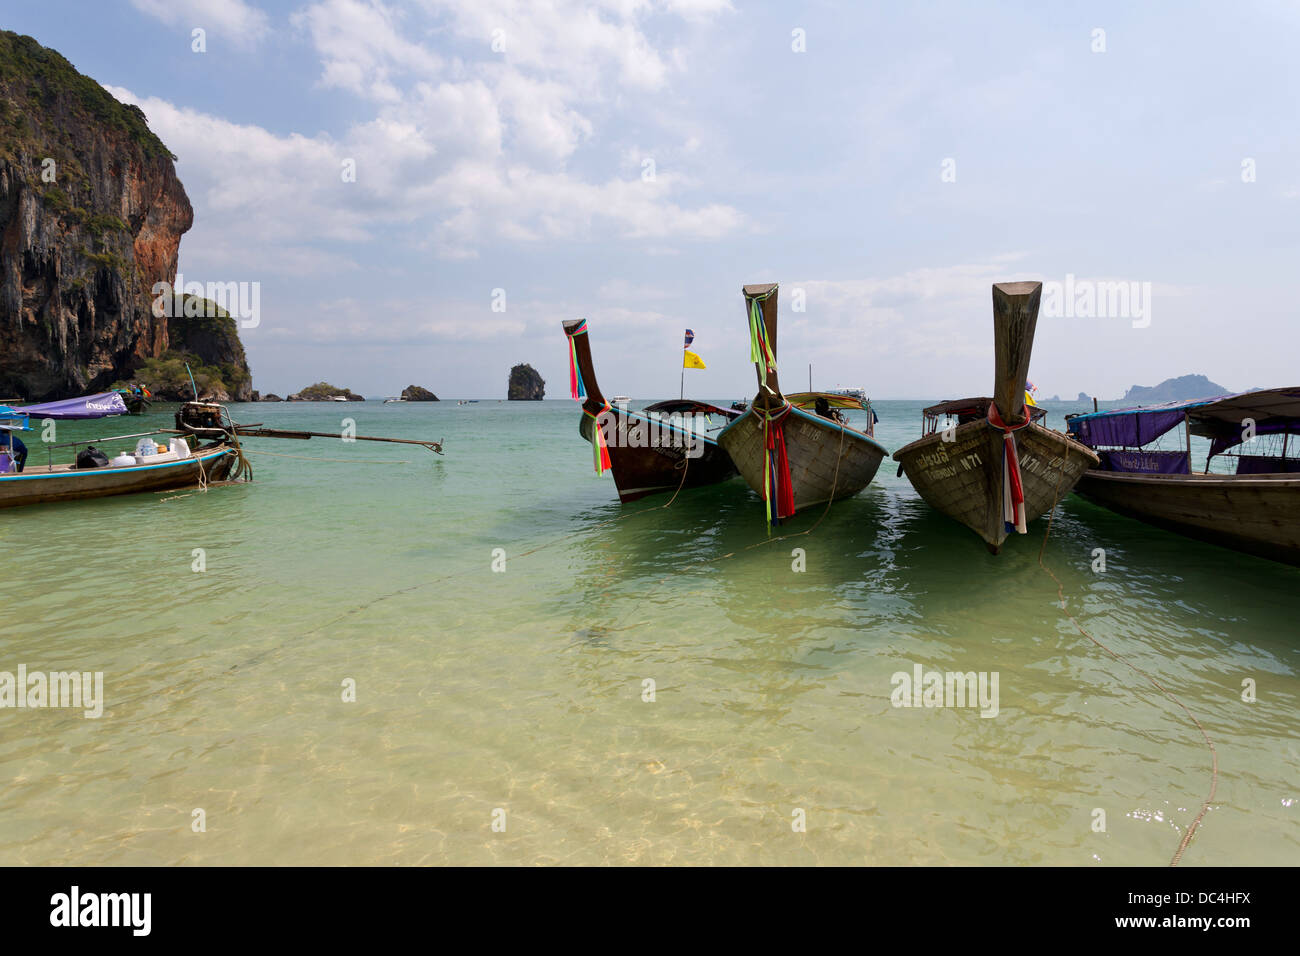 Sur les ferry-boats traditionnels en Railay Beach la province de Krabi, Thaïlande Banque D'Images